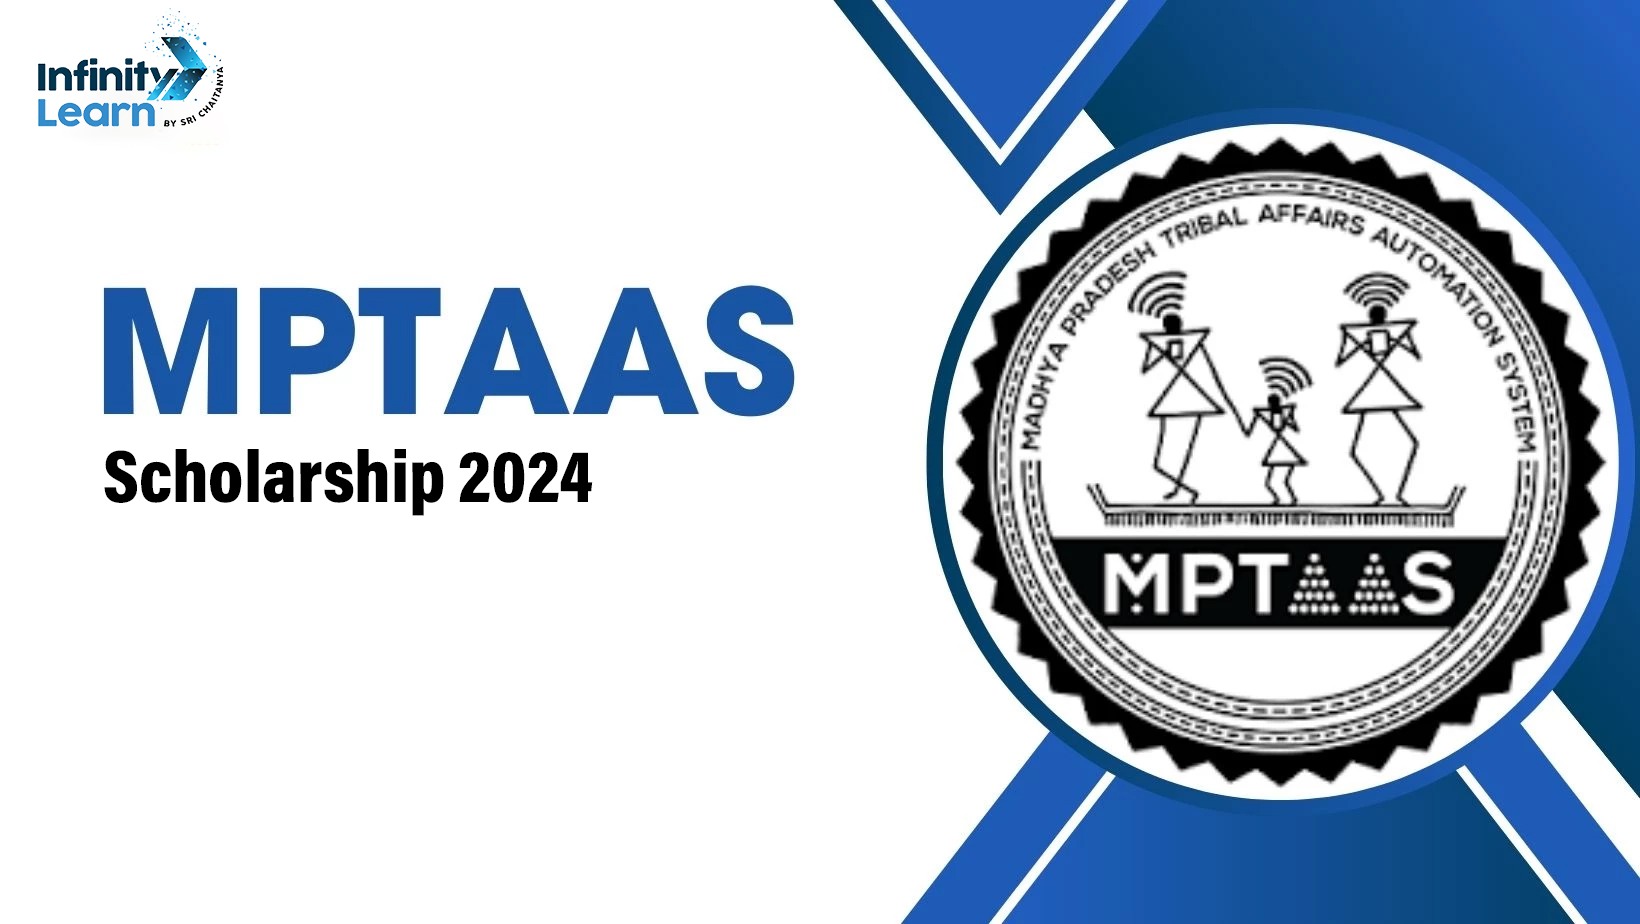 MPTAAS Scholarship 2024